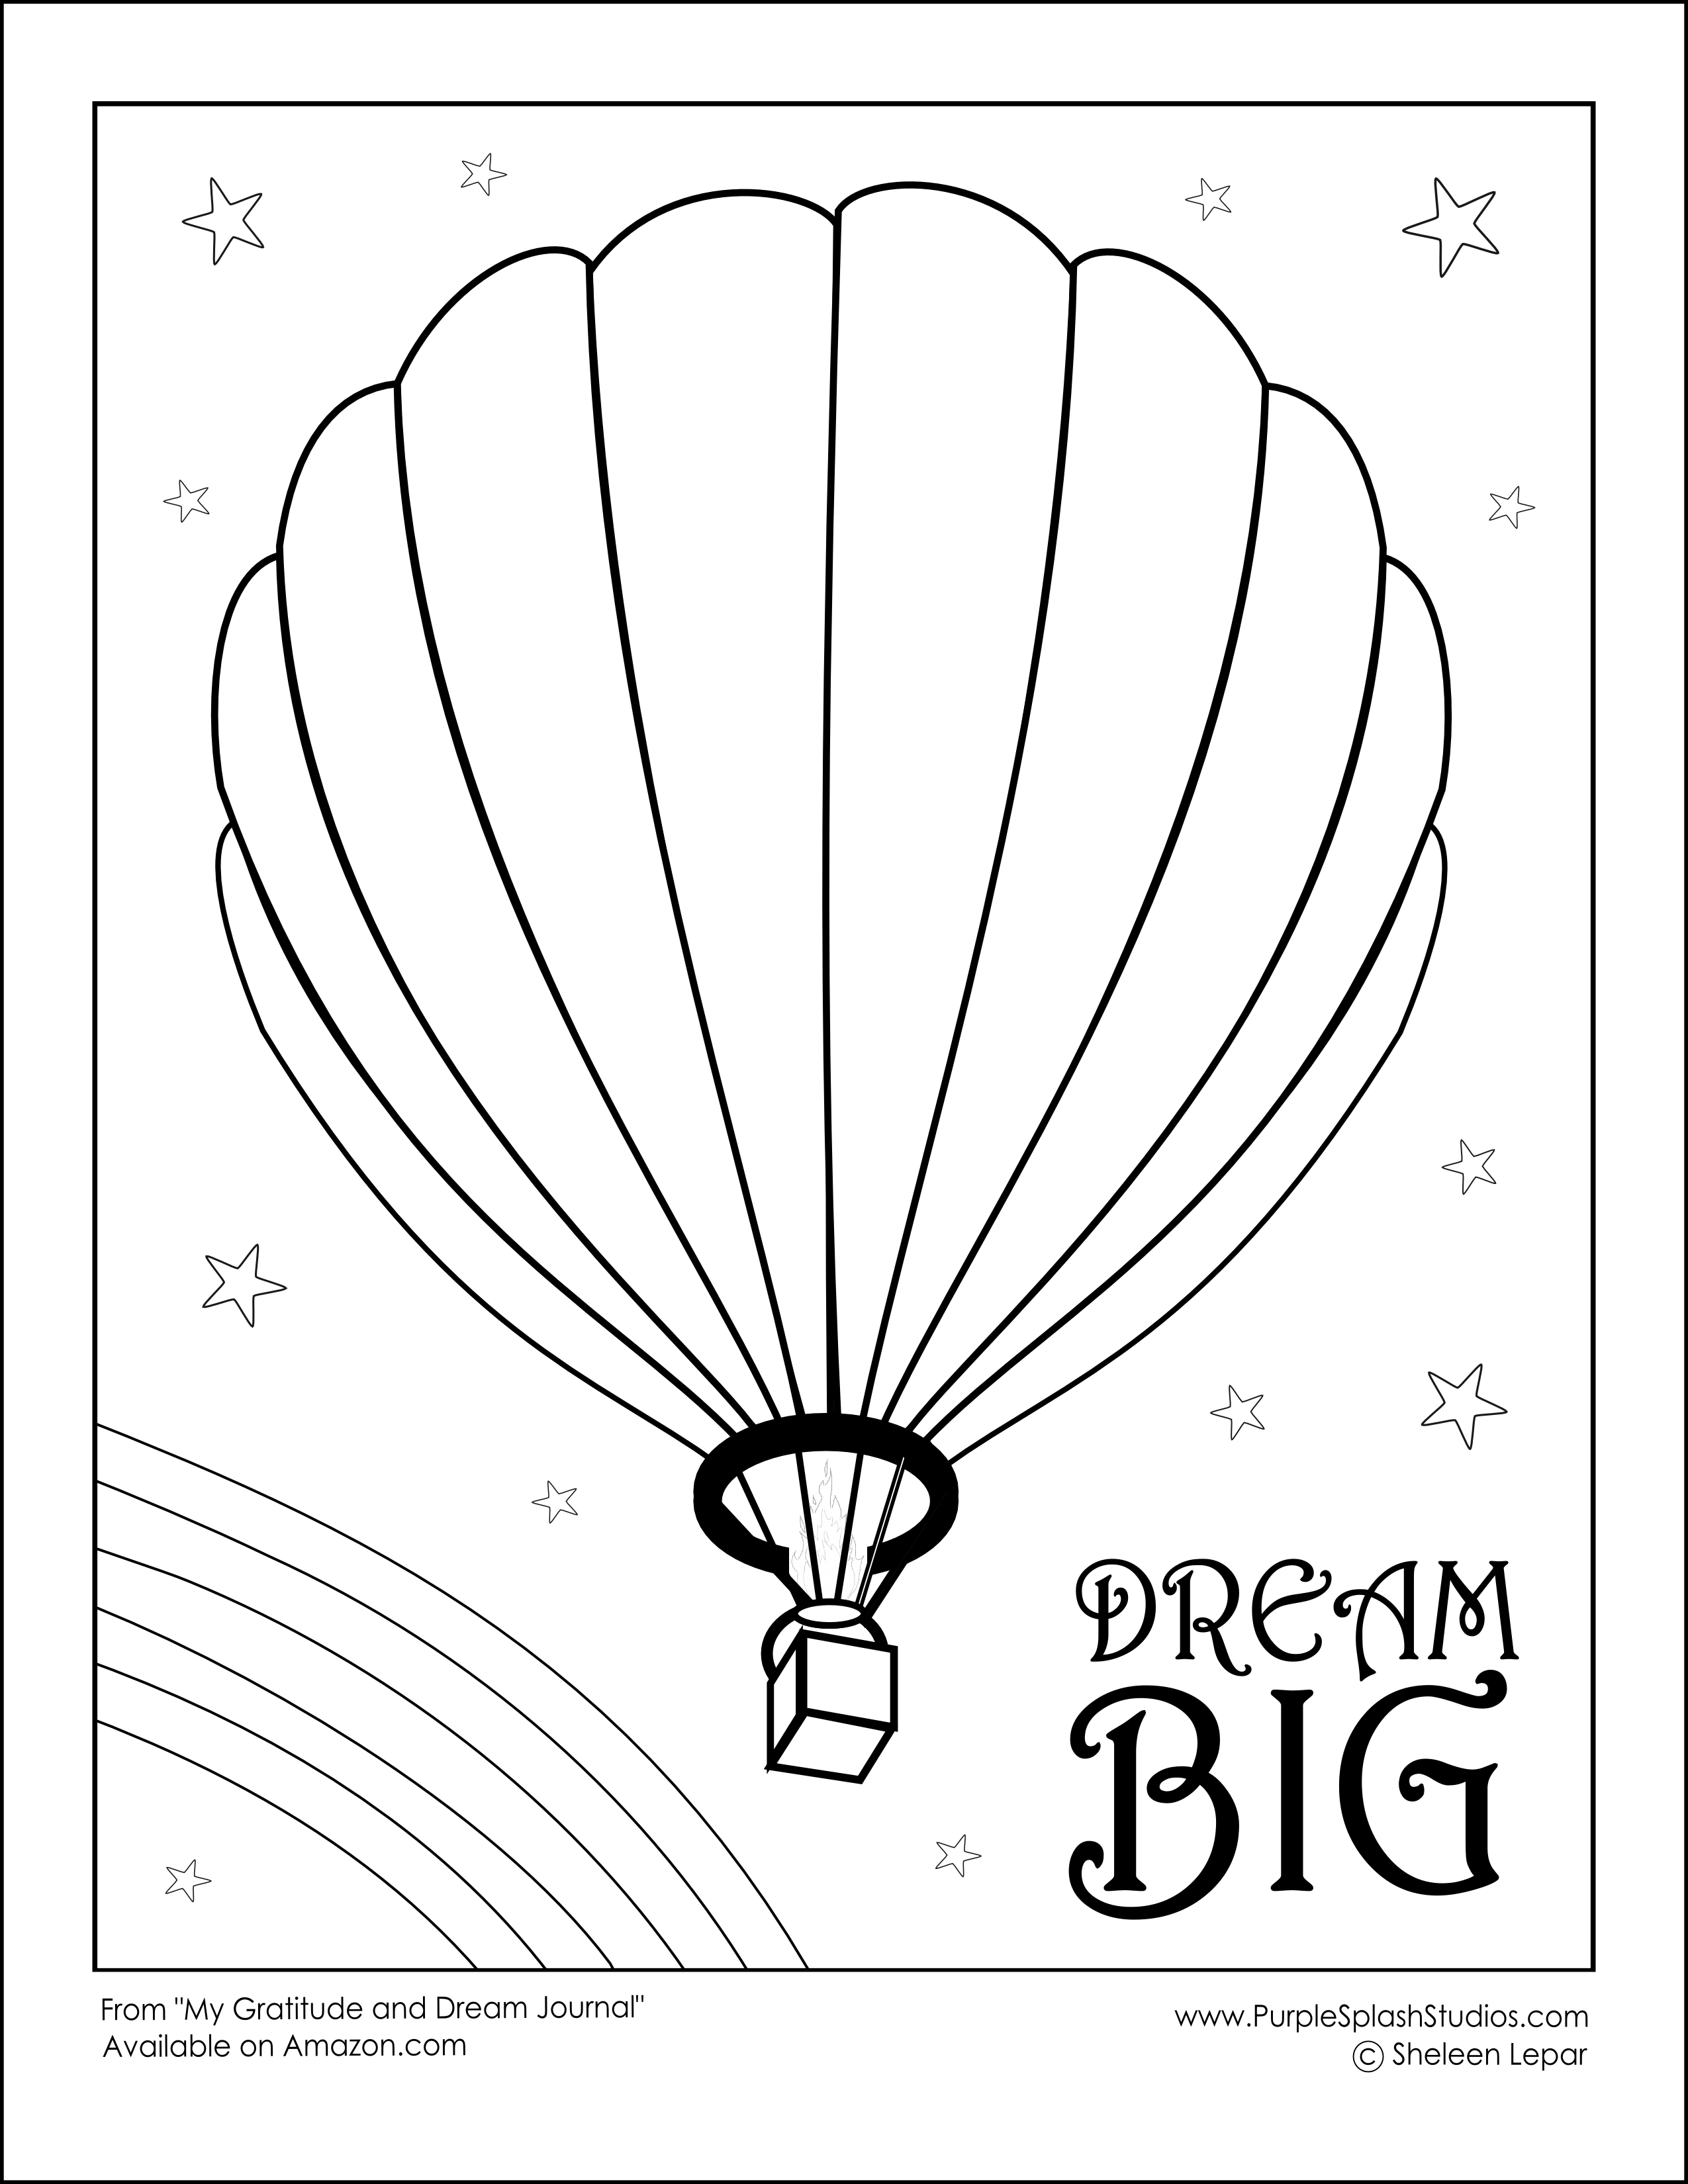 Malvorlage: Heißluftballon (Transport) #134700 - Kostenlose Malvorlagen zum Ausdrucken